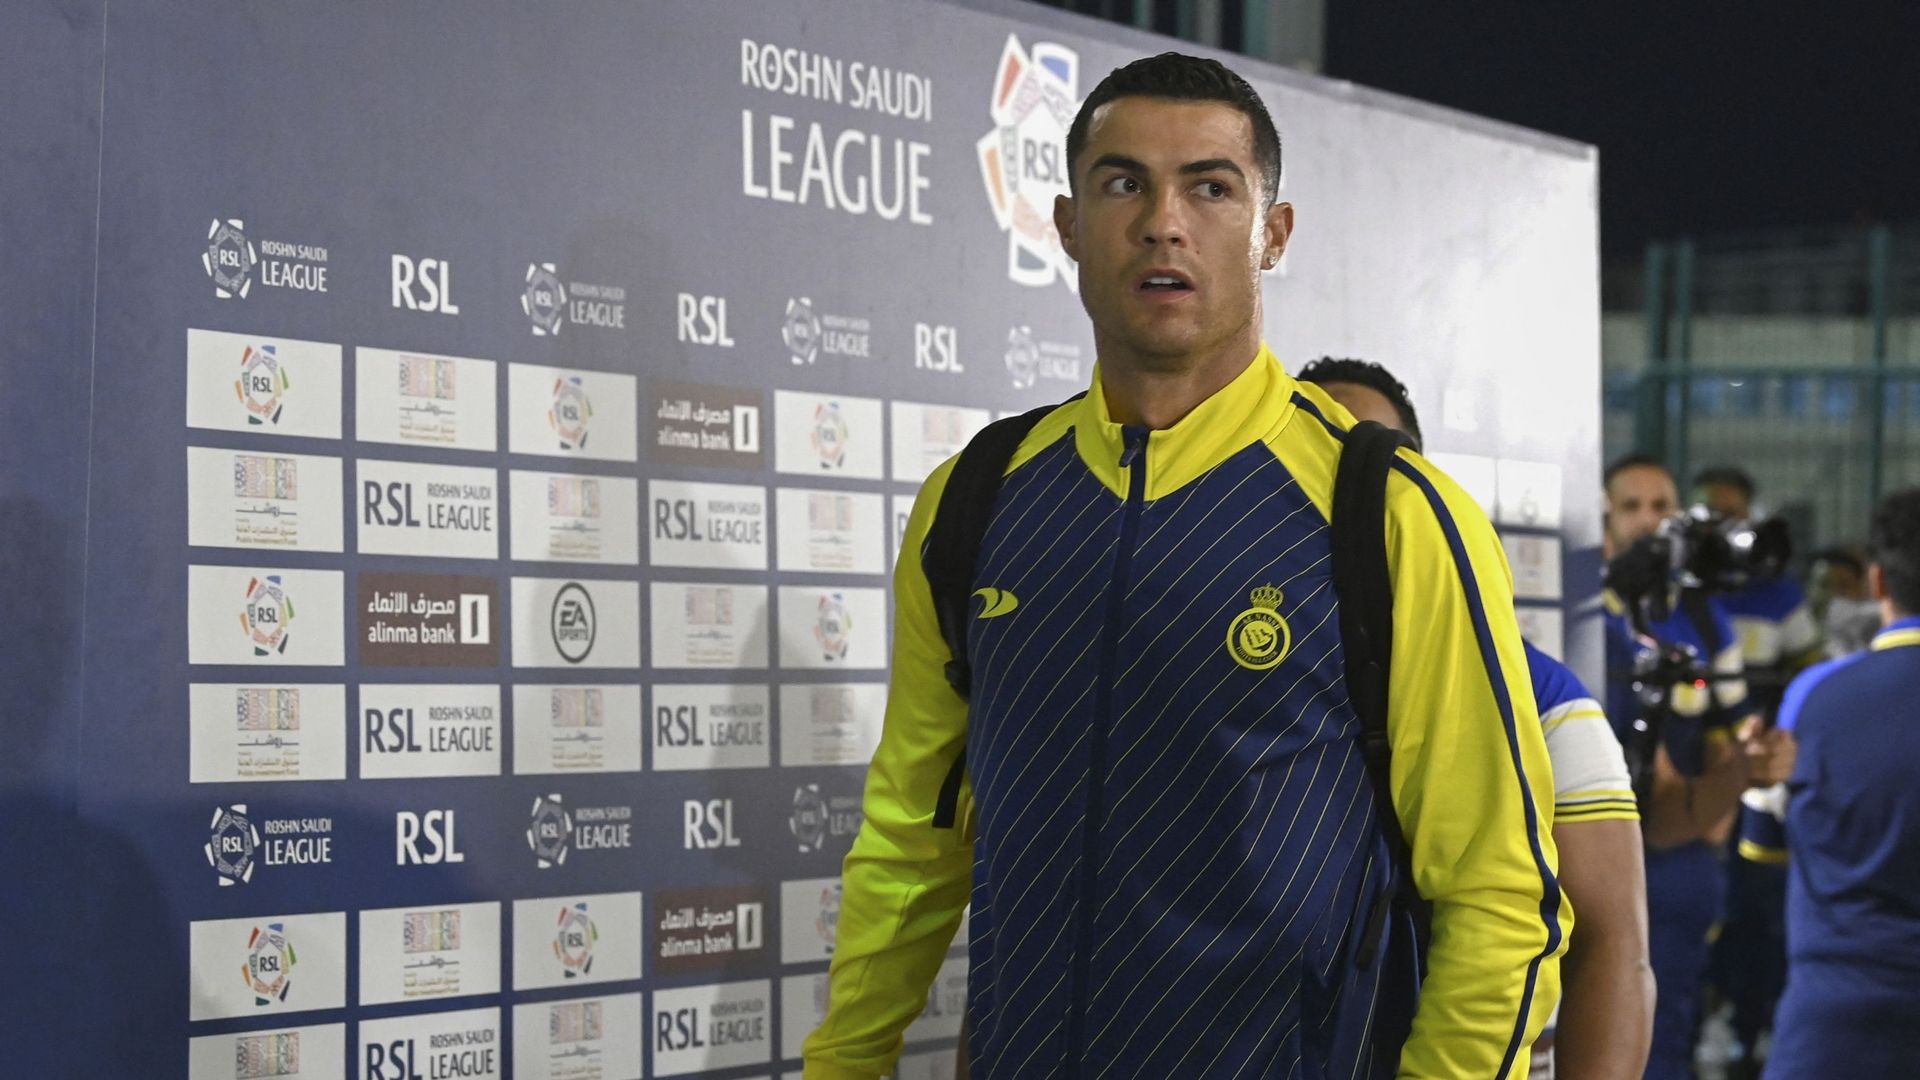 Football : les maillots de Cristiano Ronaldo à Al-Nassr s'arrachent déjà